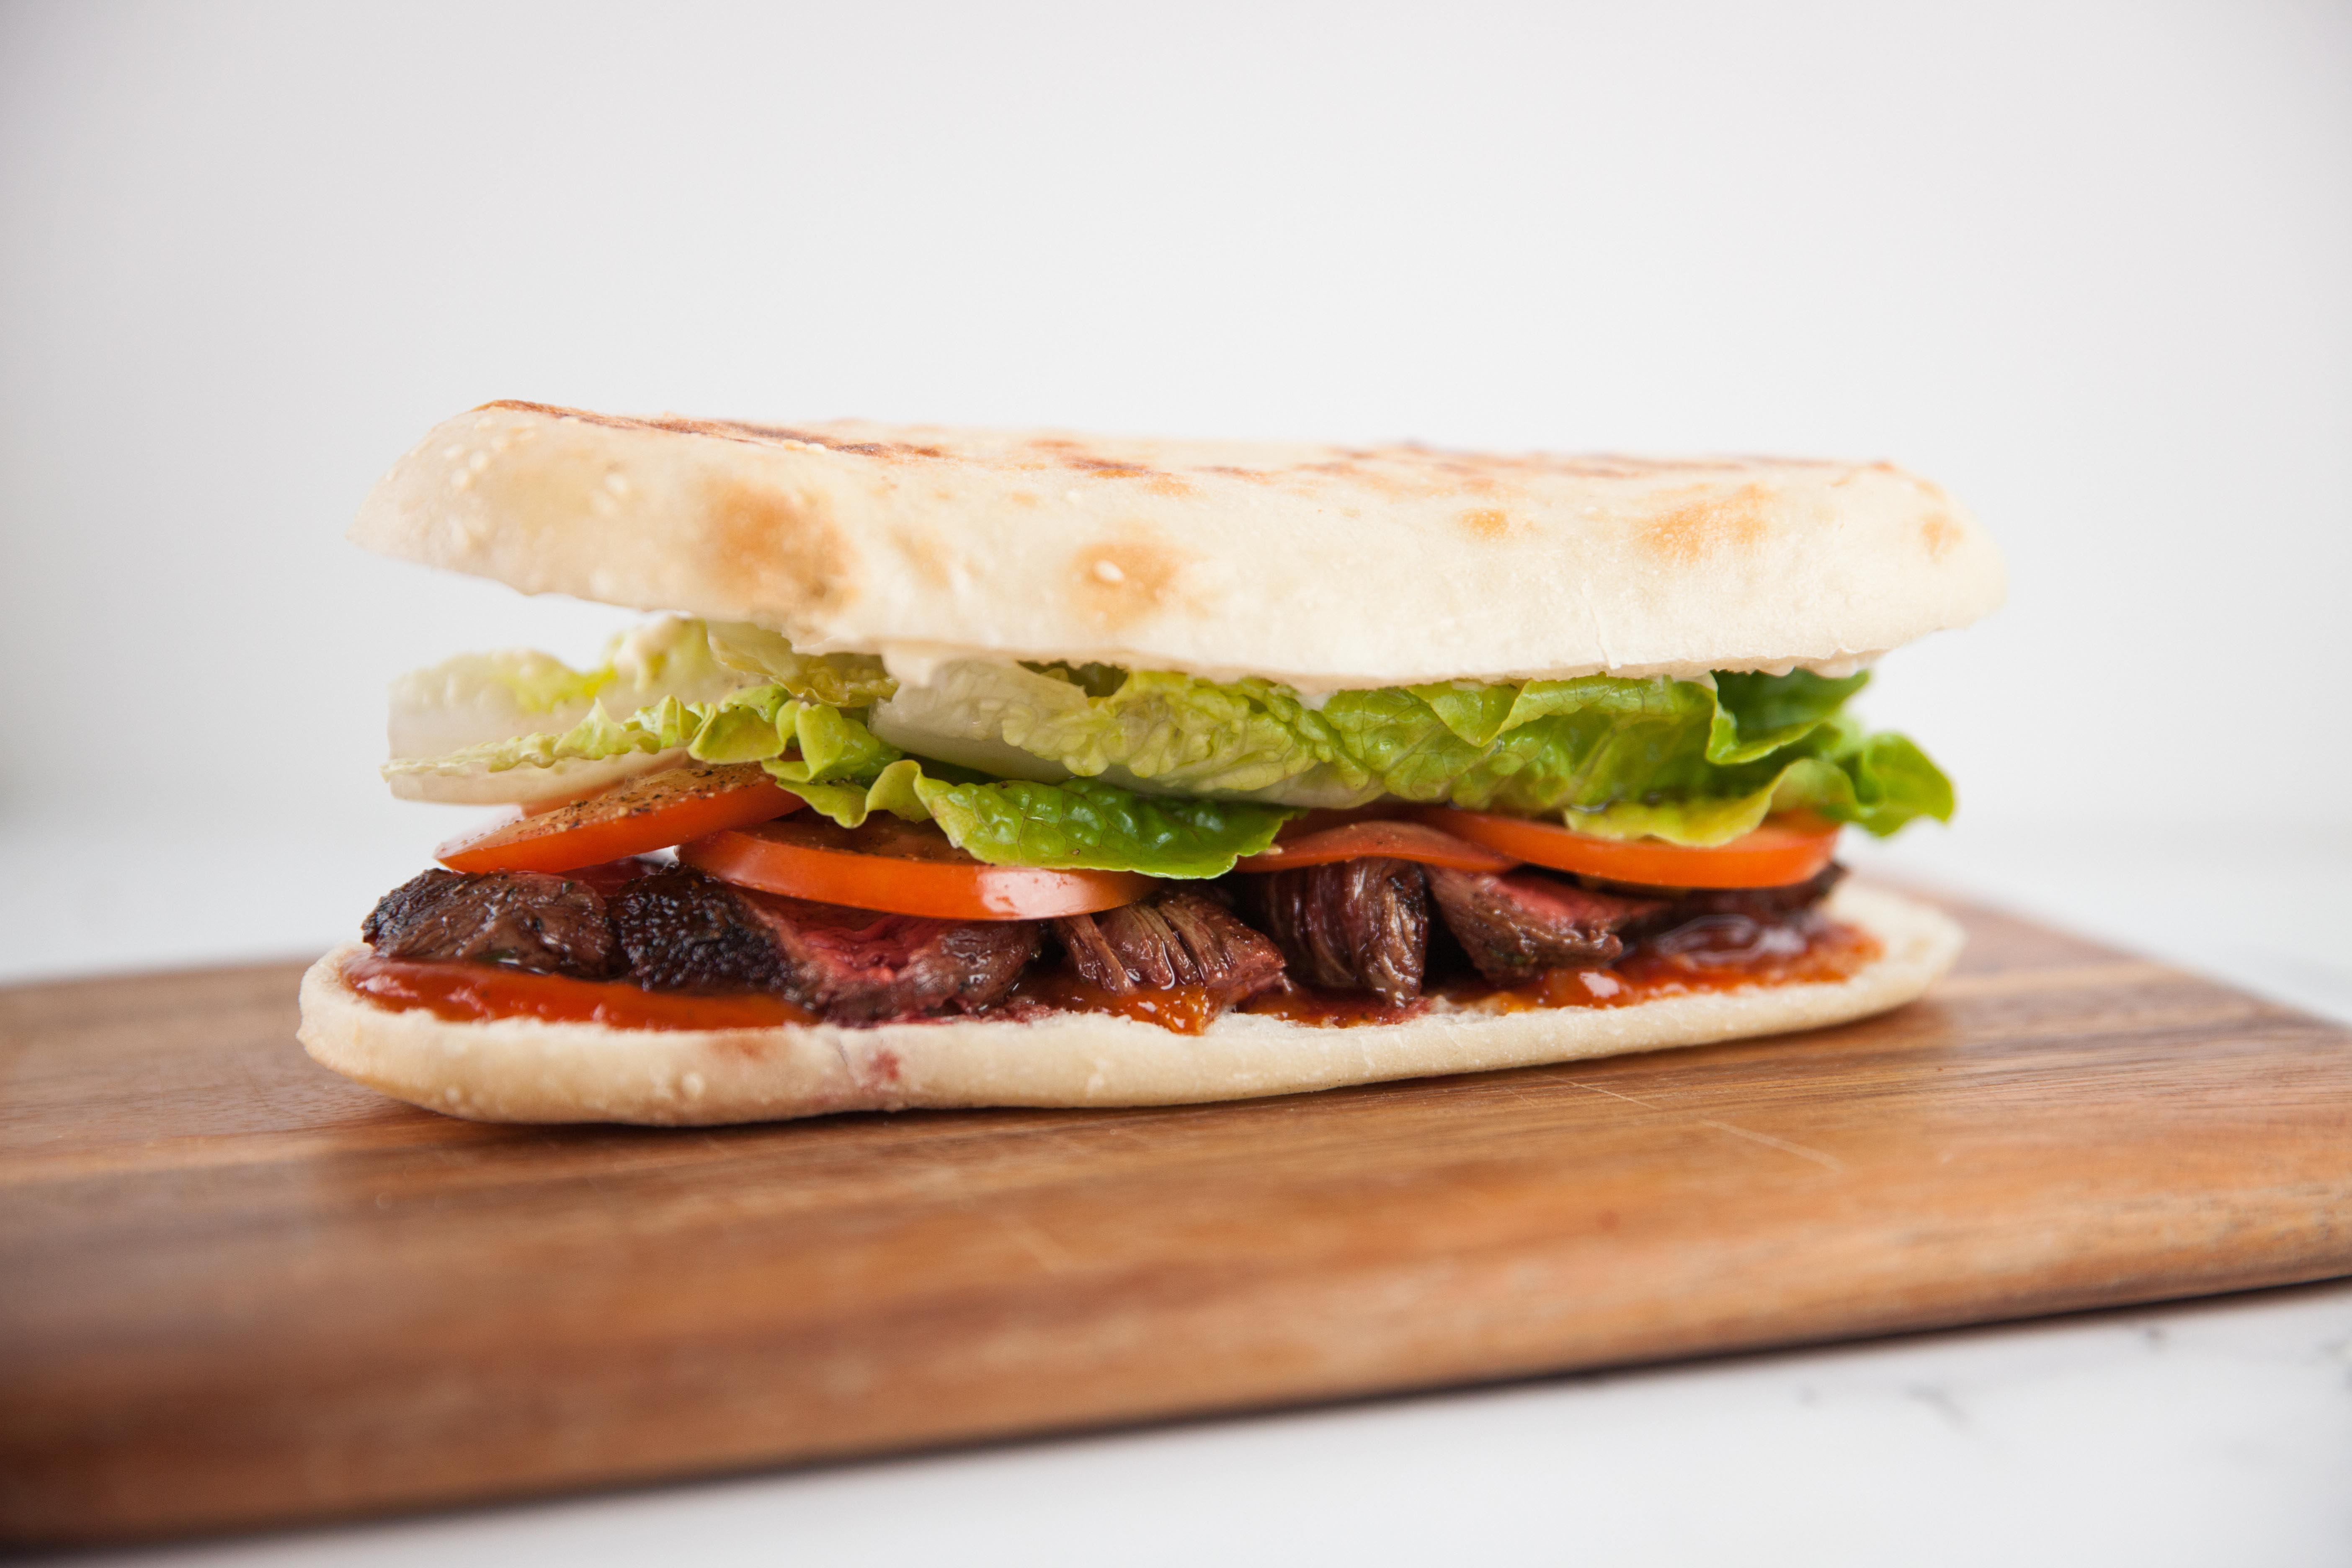 K Roo Steak Sandwich By Justine Schofield